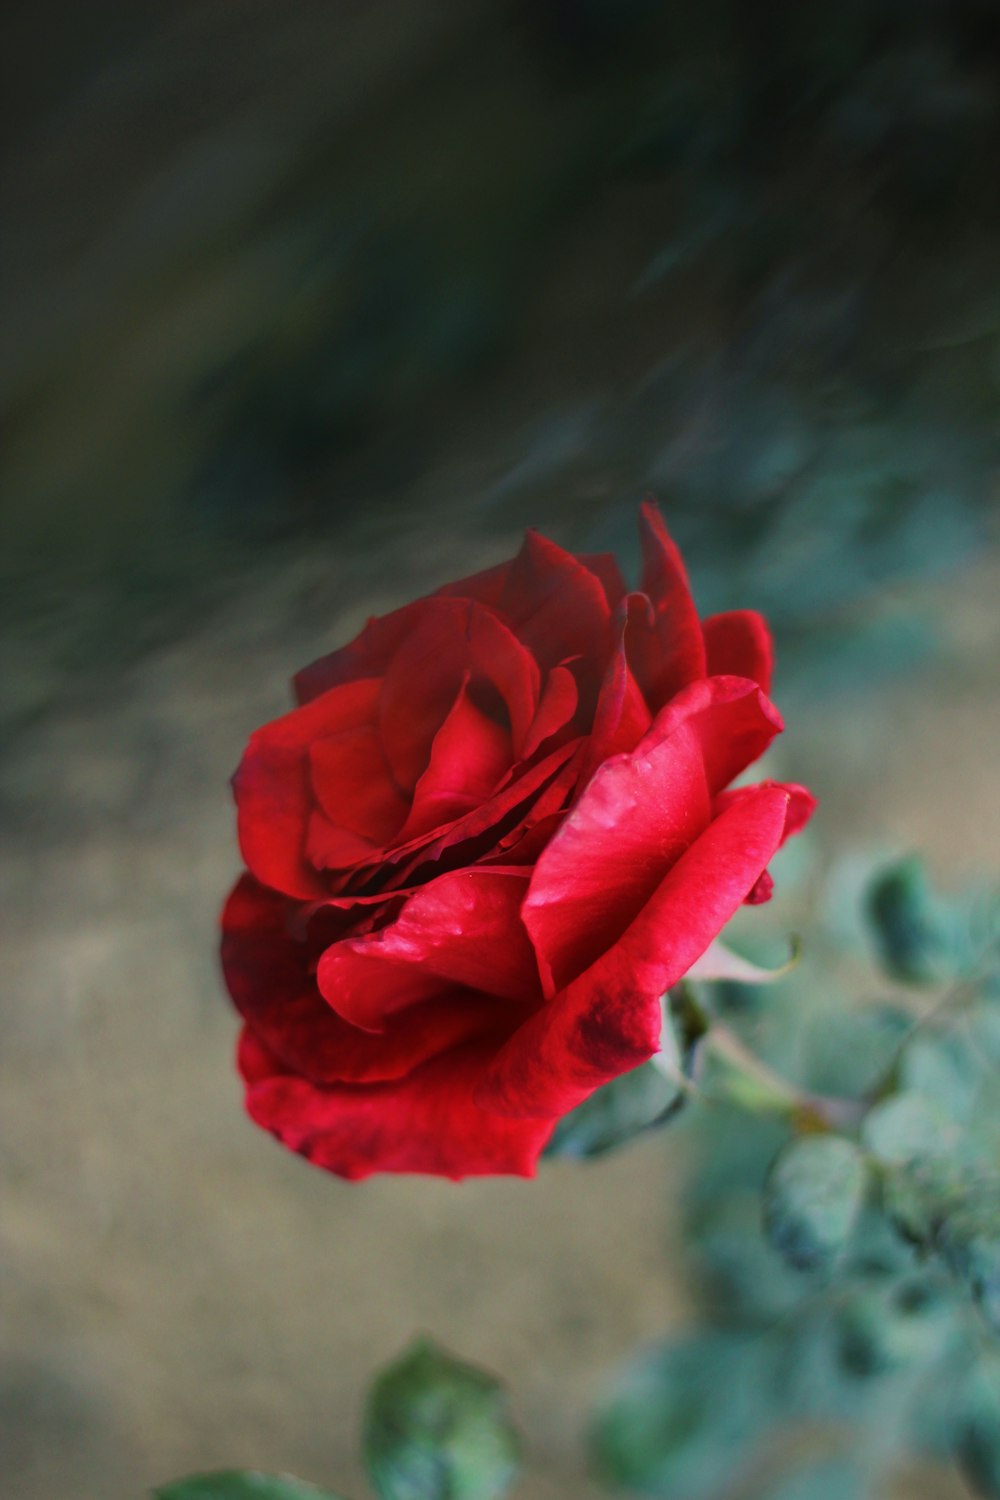 rosa roja en flor durante el día